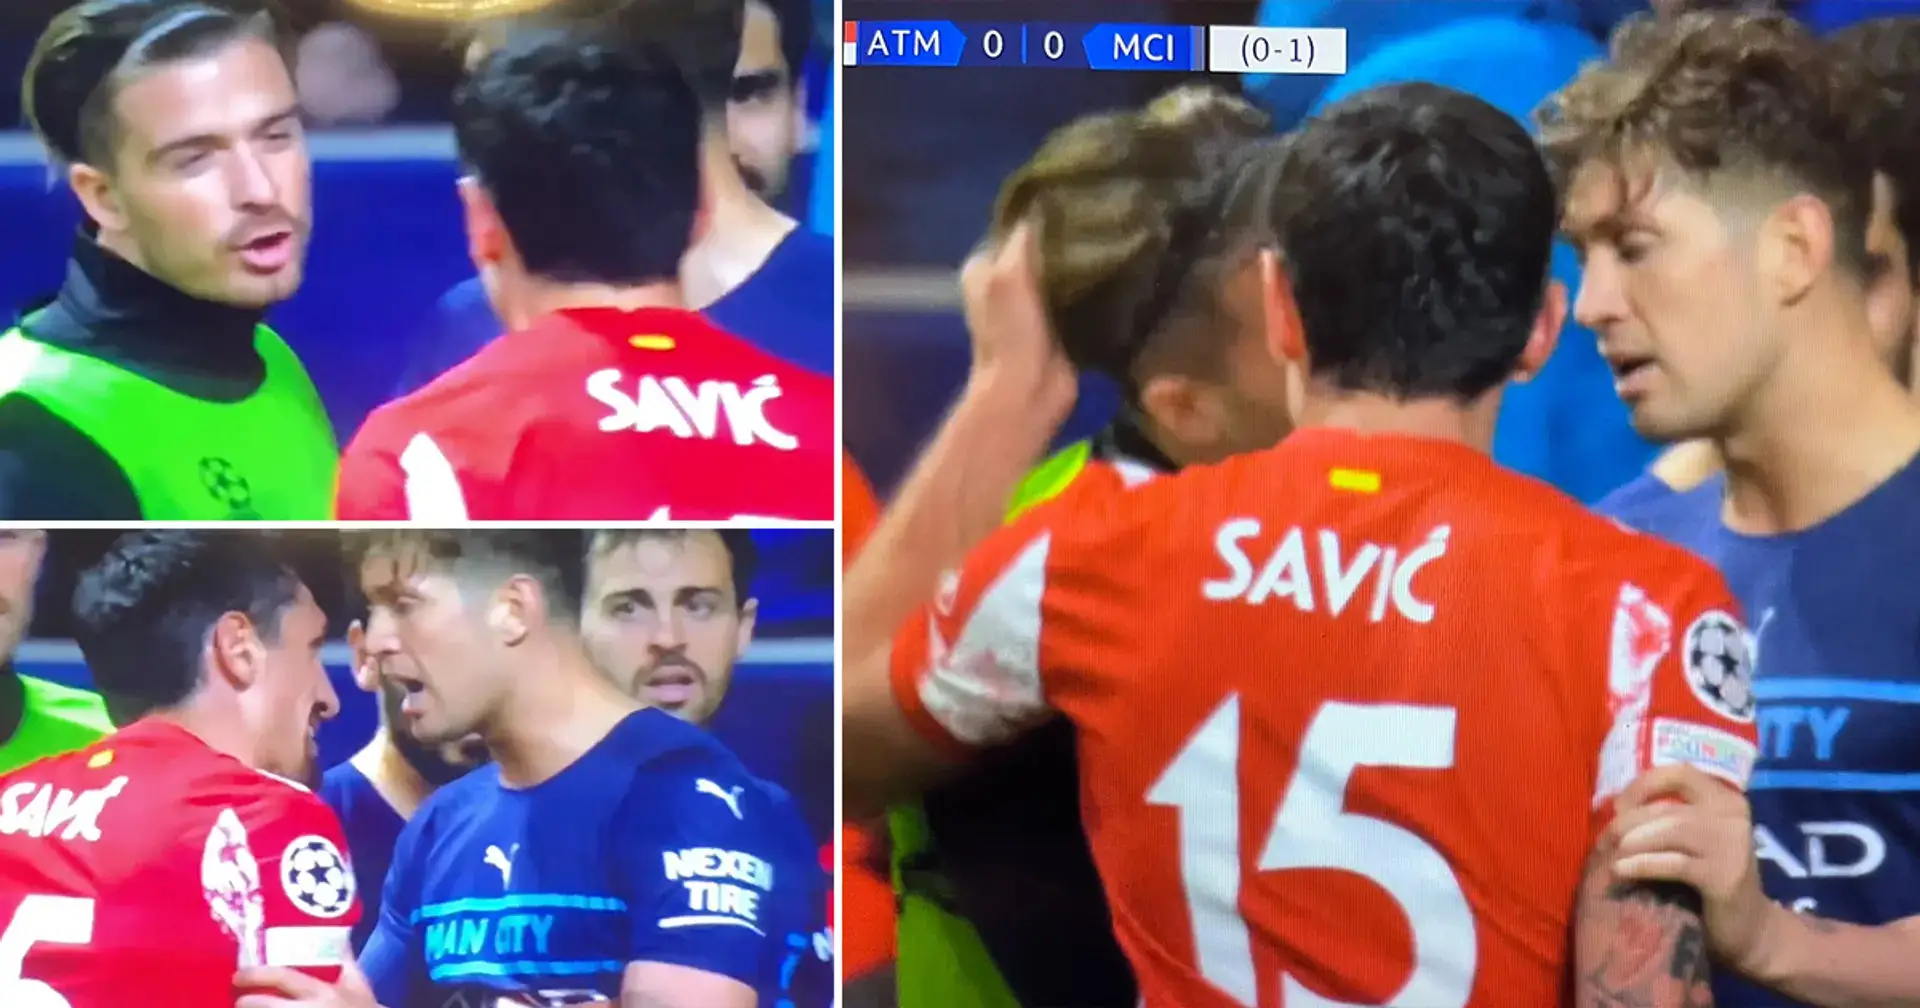 Savic tira bruscamente del cabello de Grealish durante el partido, los jugadores chocan en el túnel y tiene que intervenir la policía 